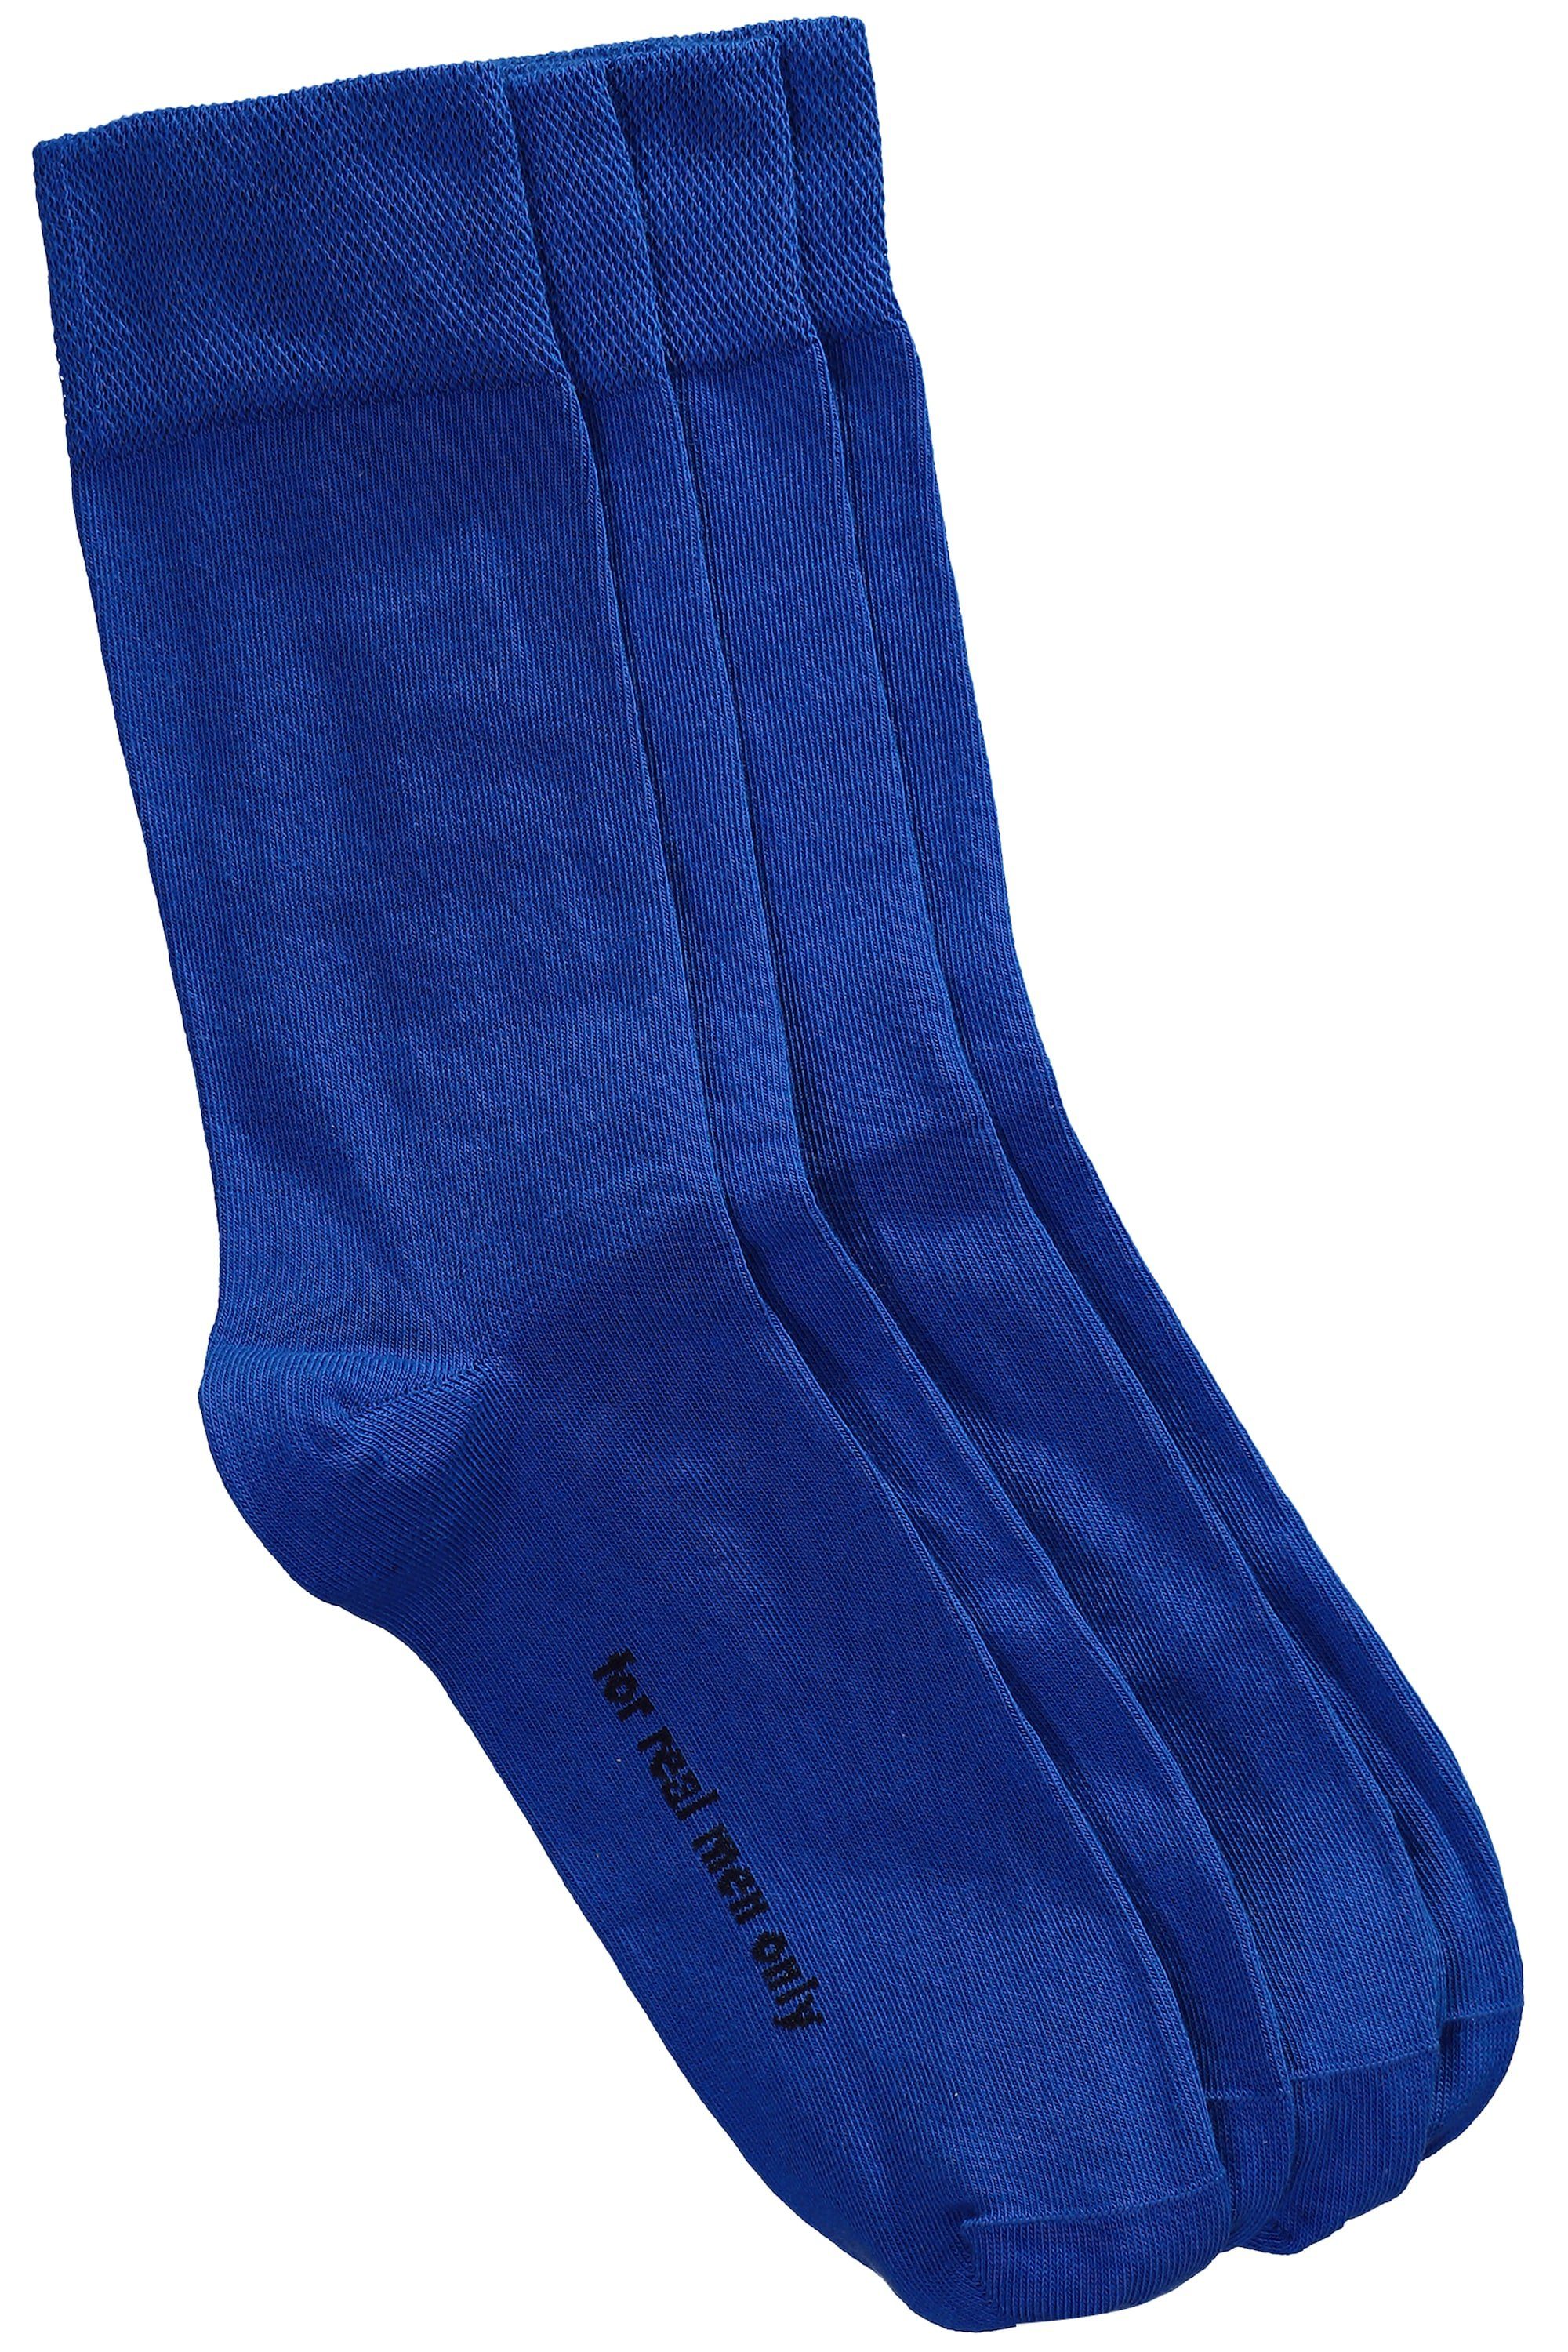 JP1880 Basicsocken Socken 2er-Pack Komfort-Bündchen (2-Paar) kobalt blau | Socken